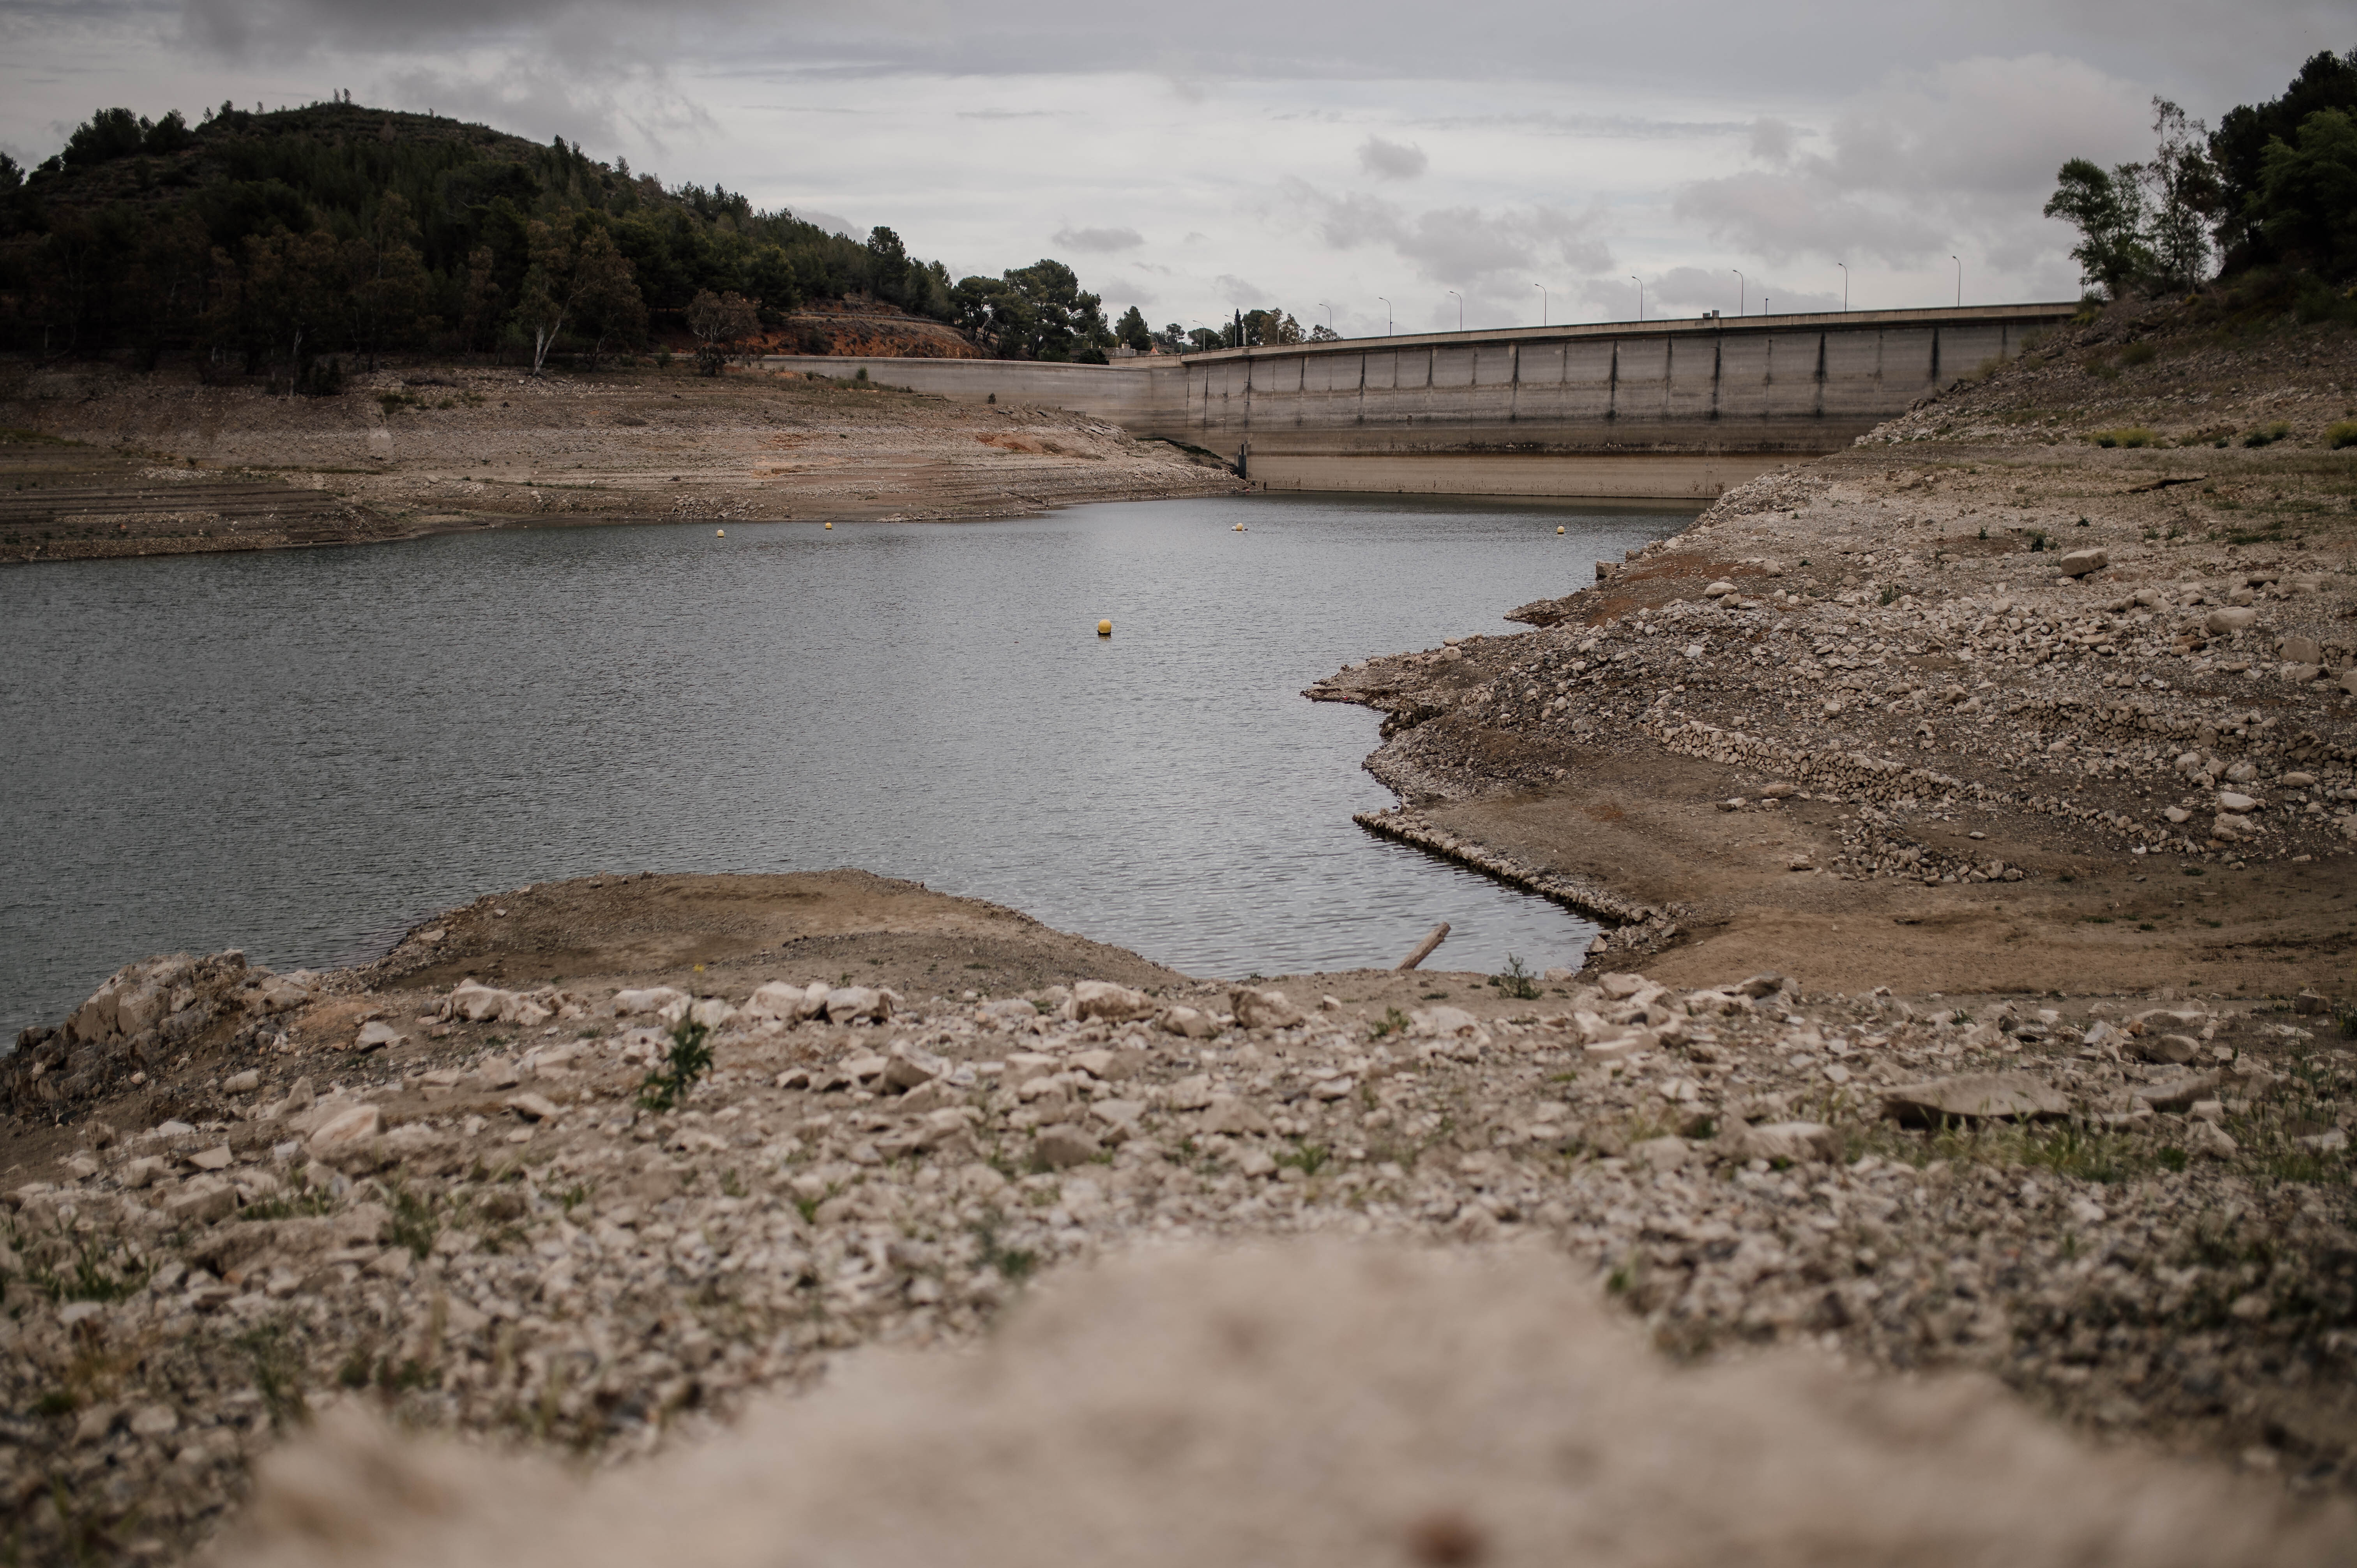 La sequía trae sorpresas: descubierto en el pantano de Riudecanyes un coche robado hace 26 años